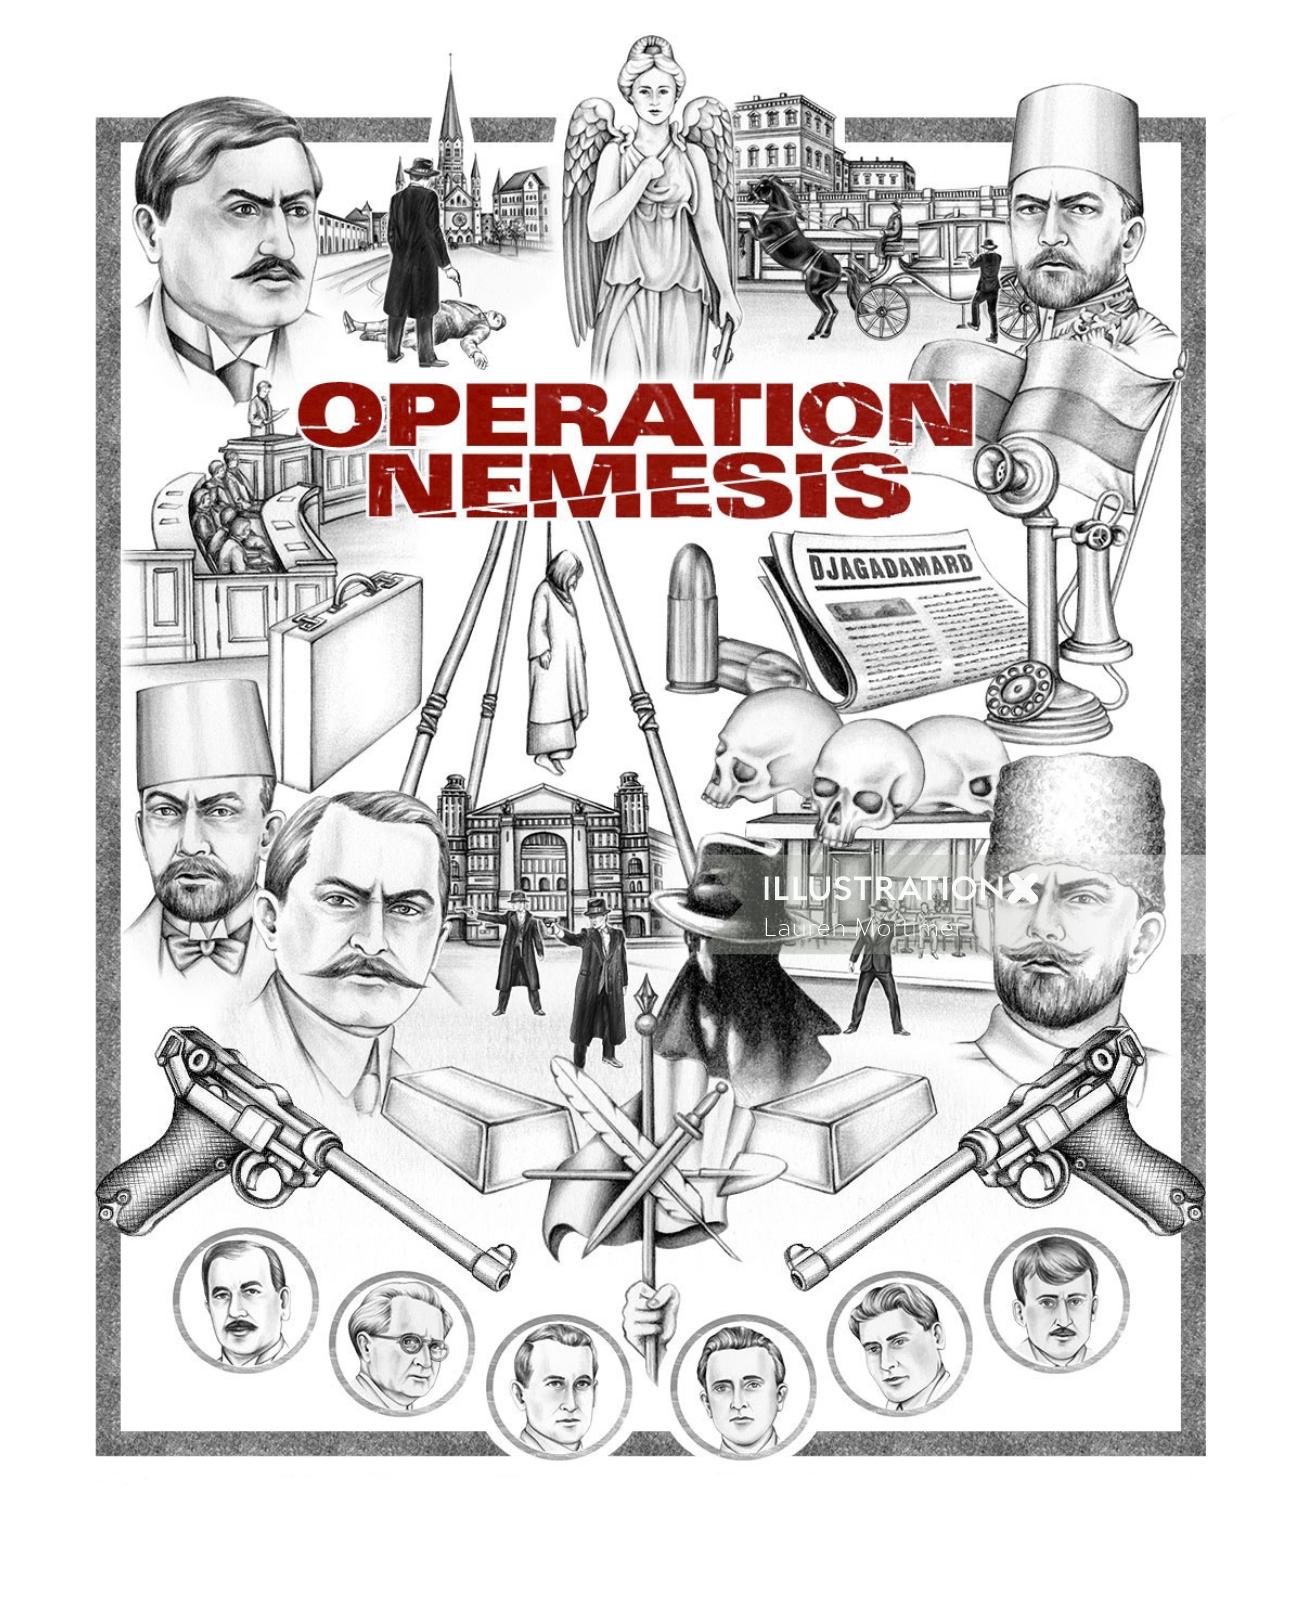 Operation Nemesis cover art by Lauren Mortimer